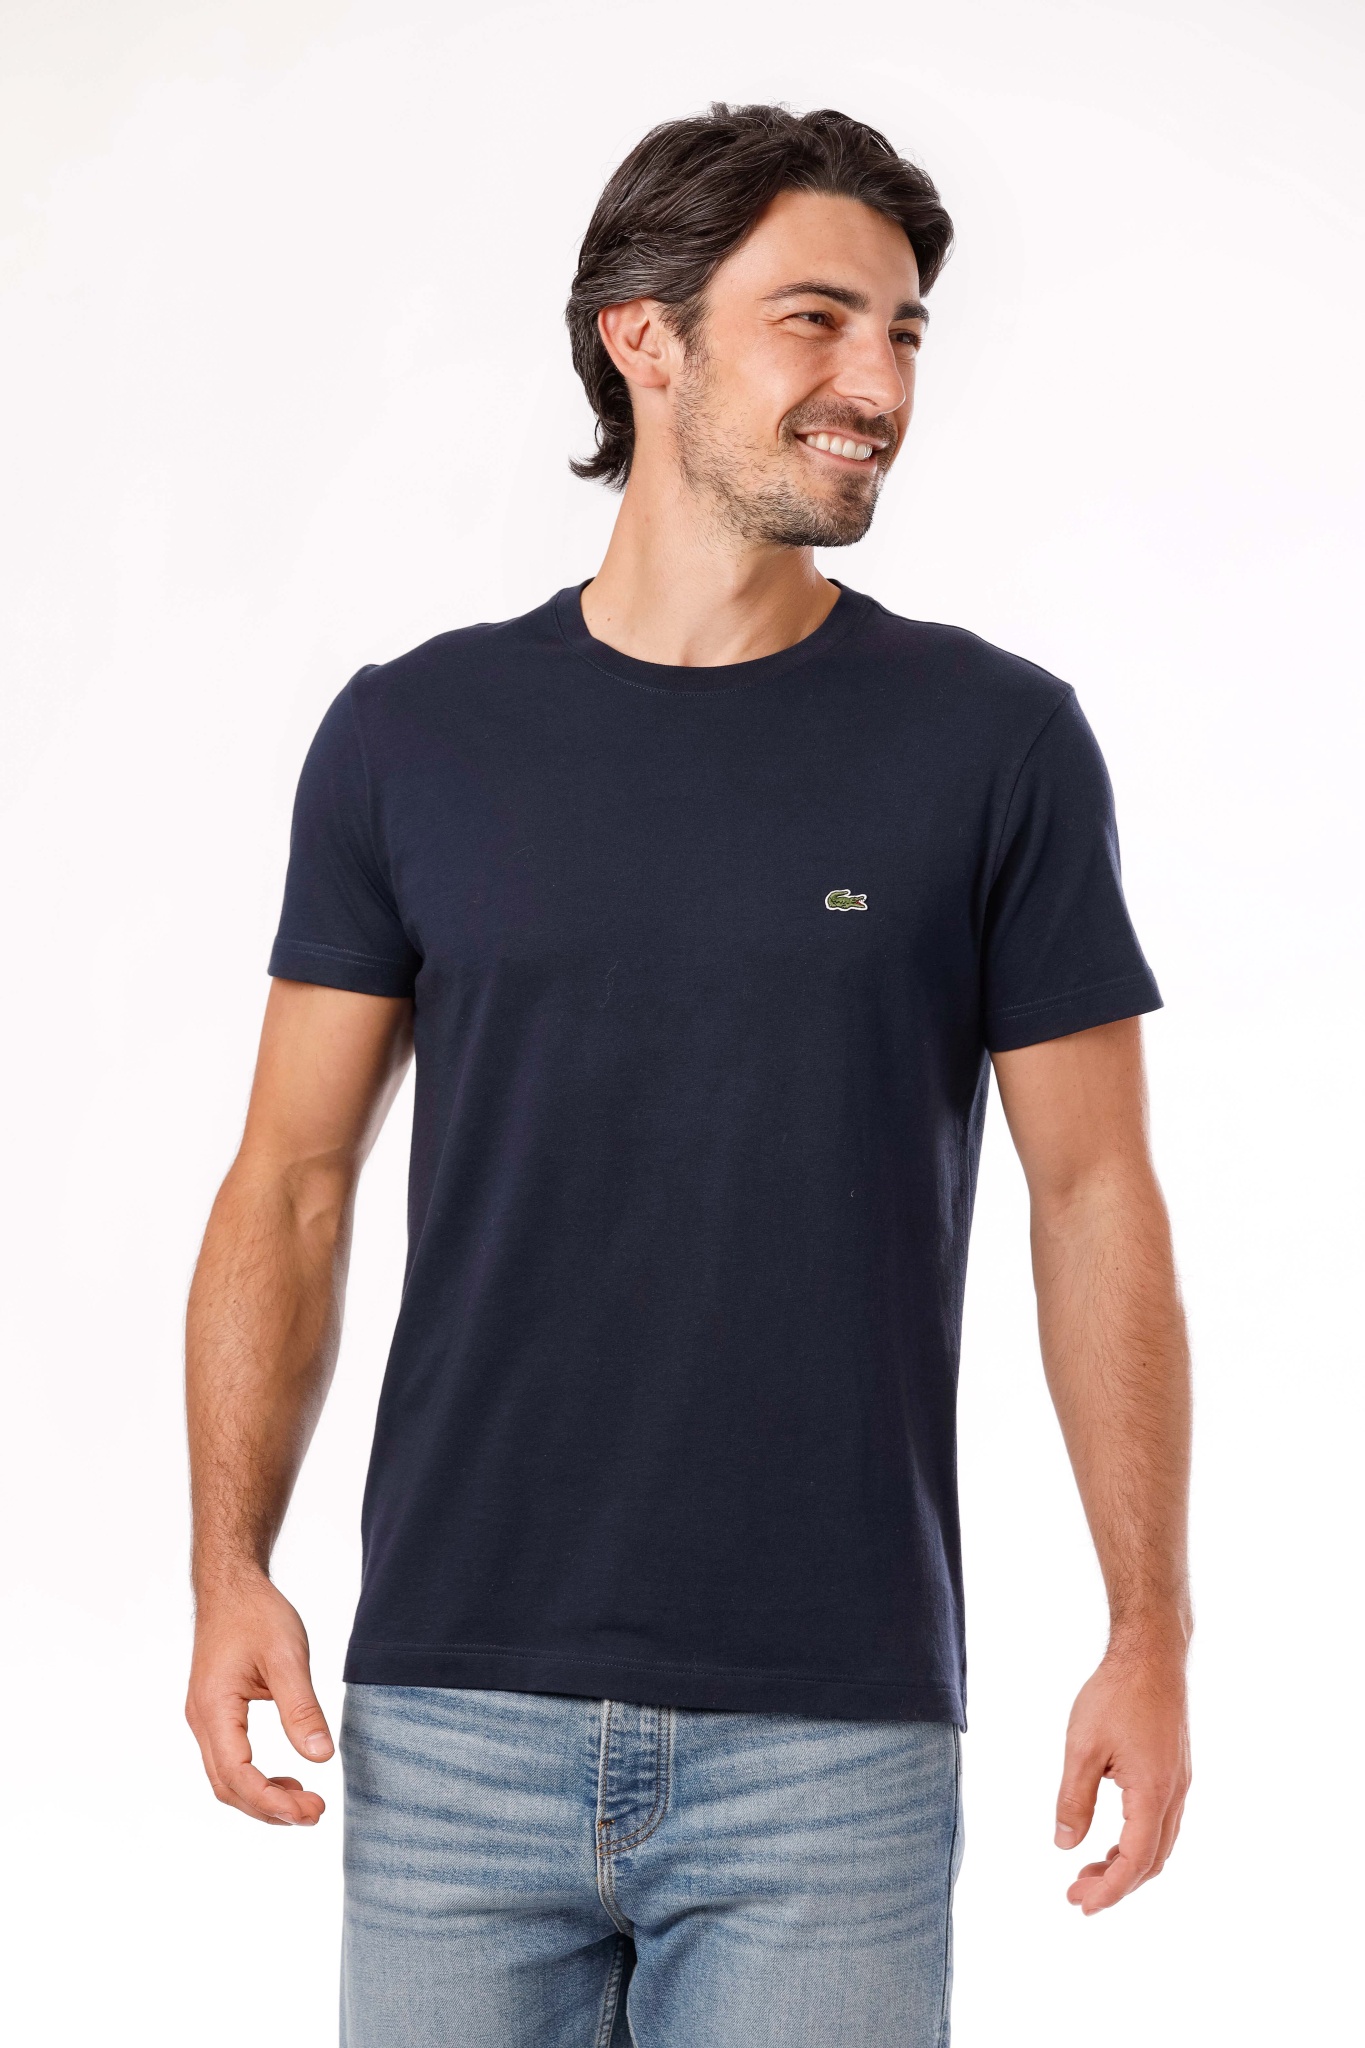 Lacoste Herren Shirts online kaufen » top Marken | WÖHRL